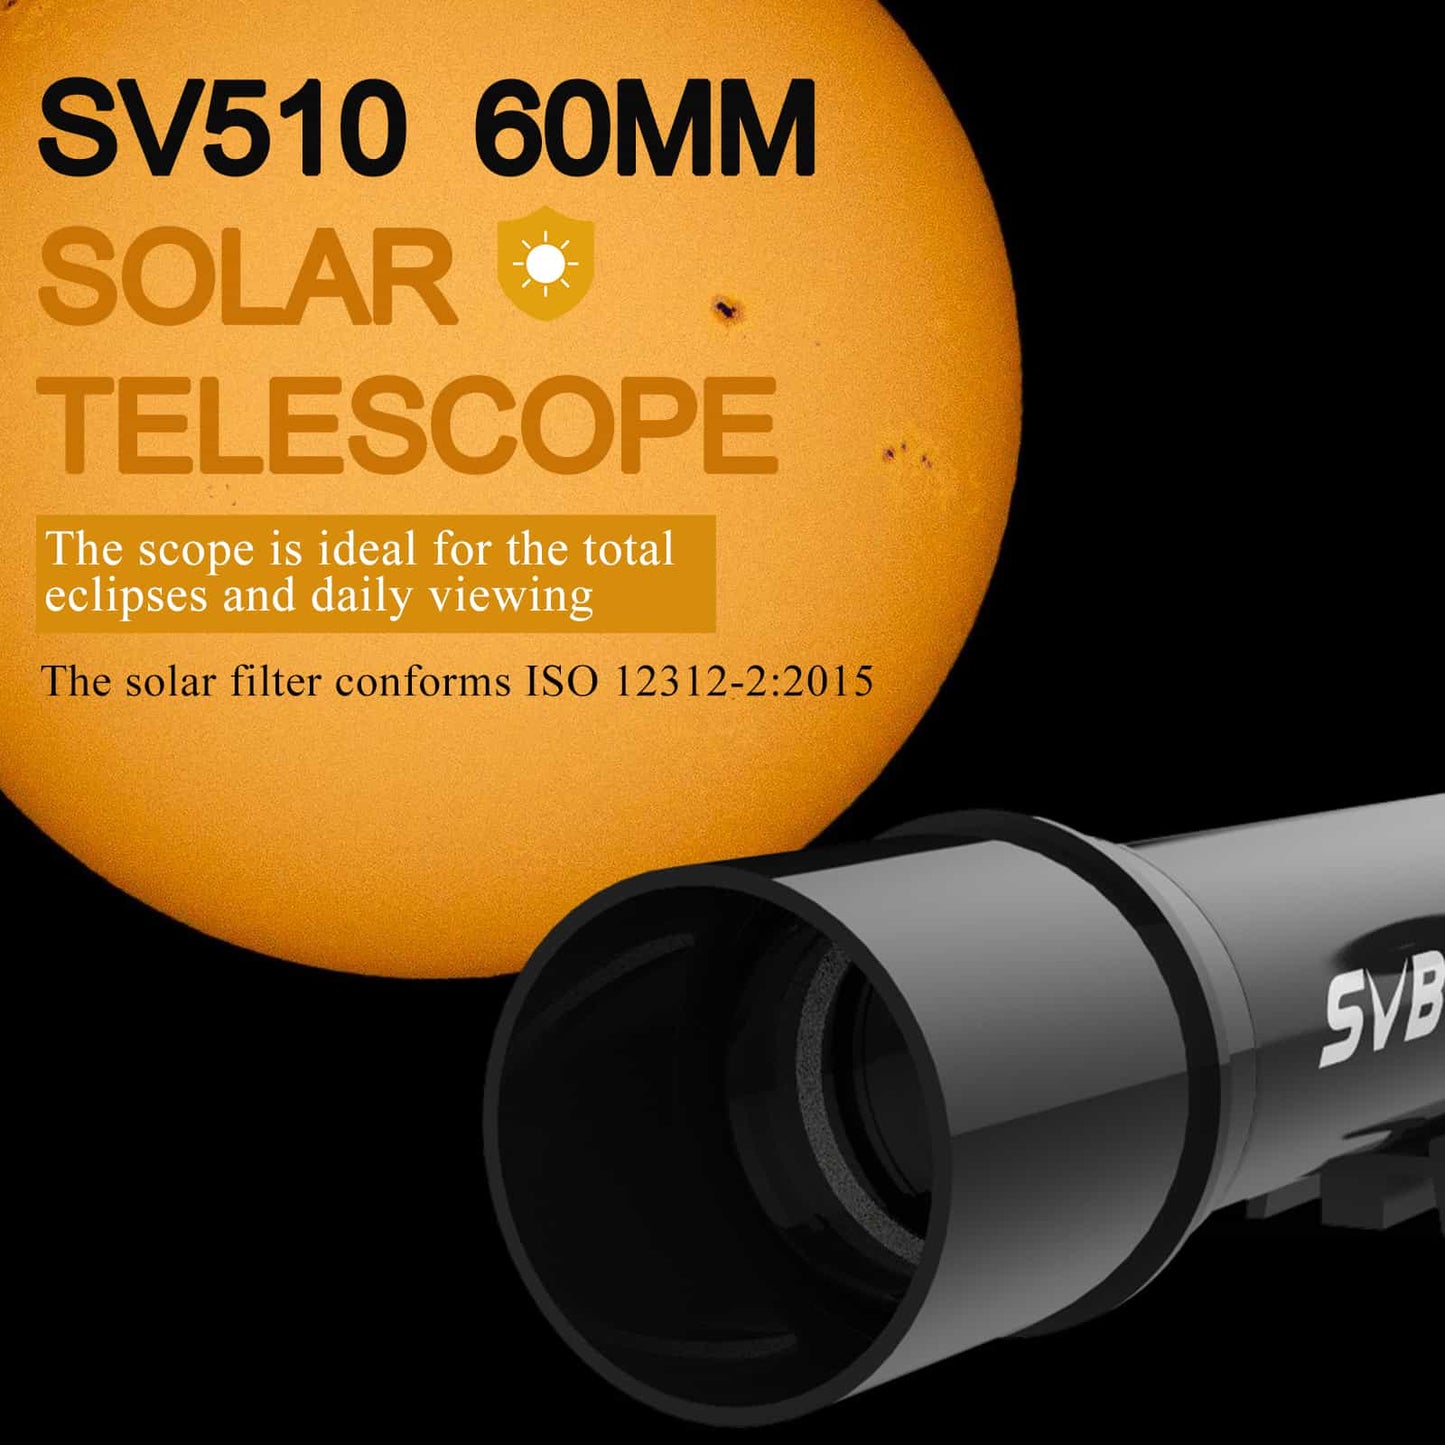 SVBONY SV510 Telescopio Refractor Solar de Viaje de 60mm f/6.6 con Mochila Para Observación Solar